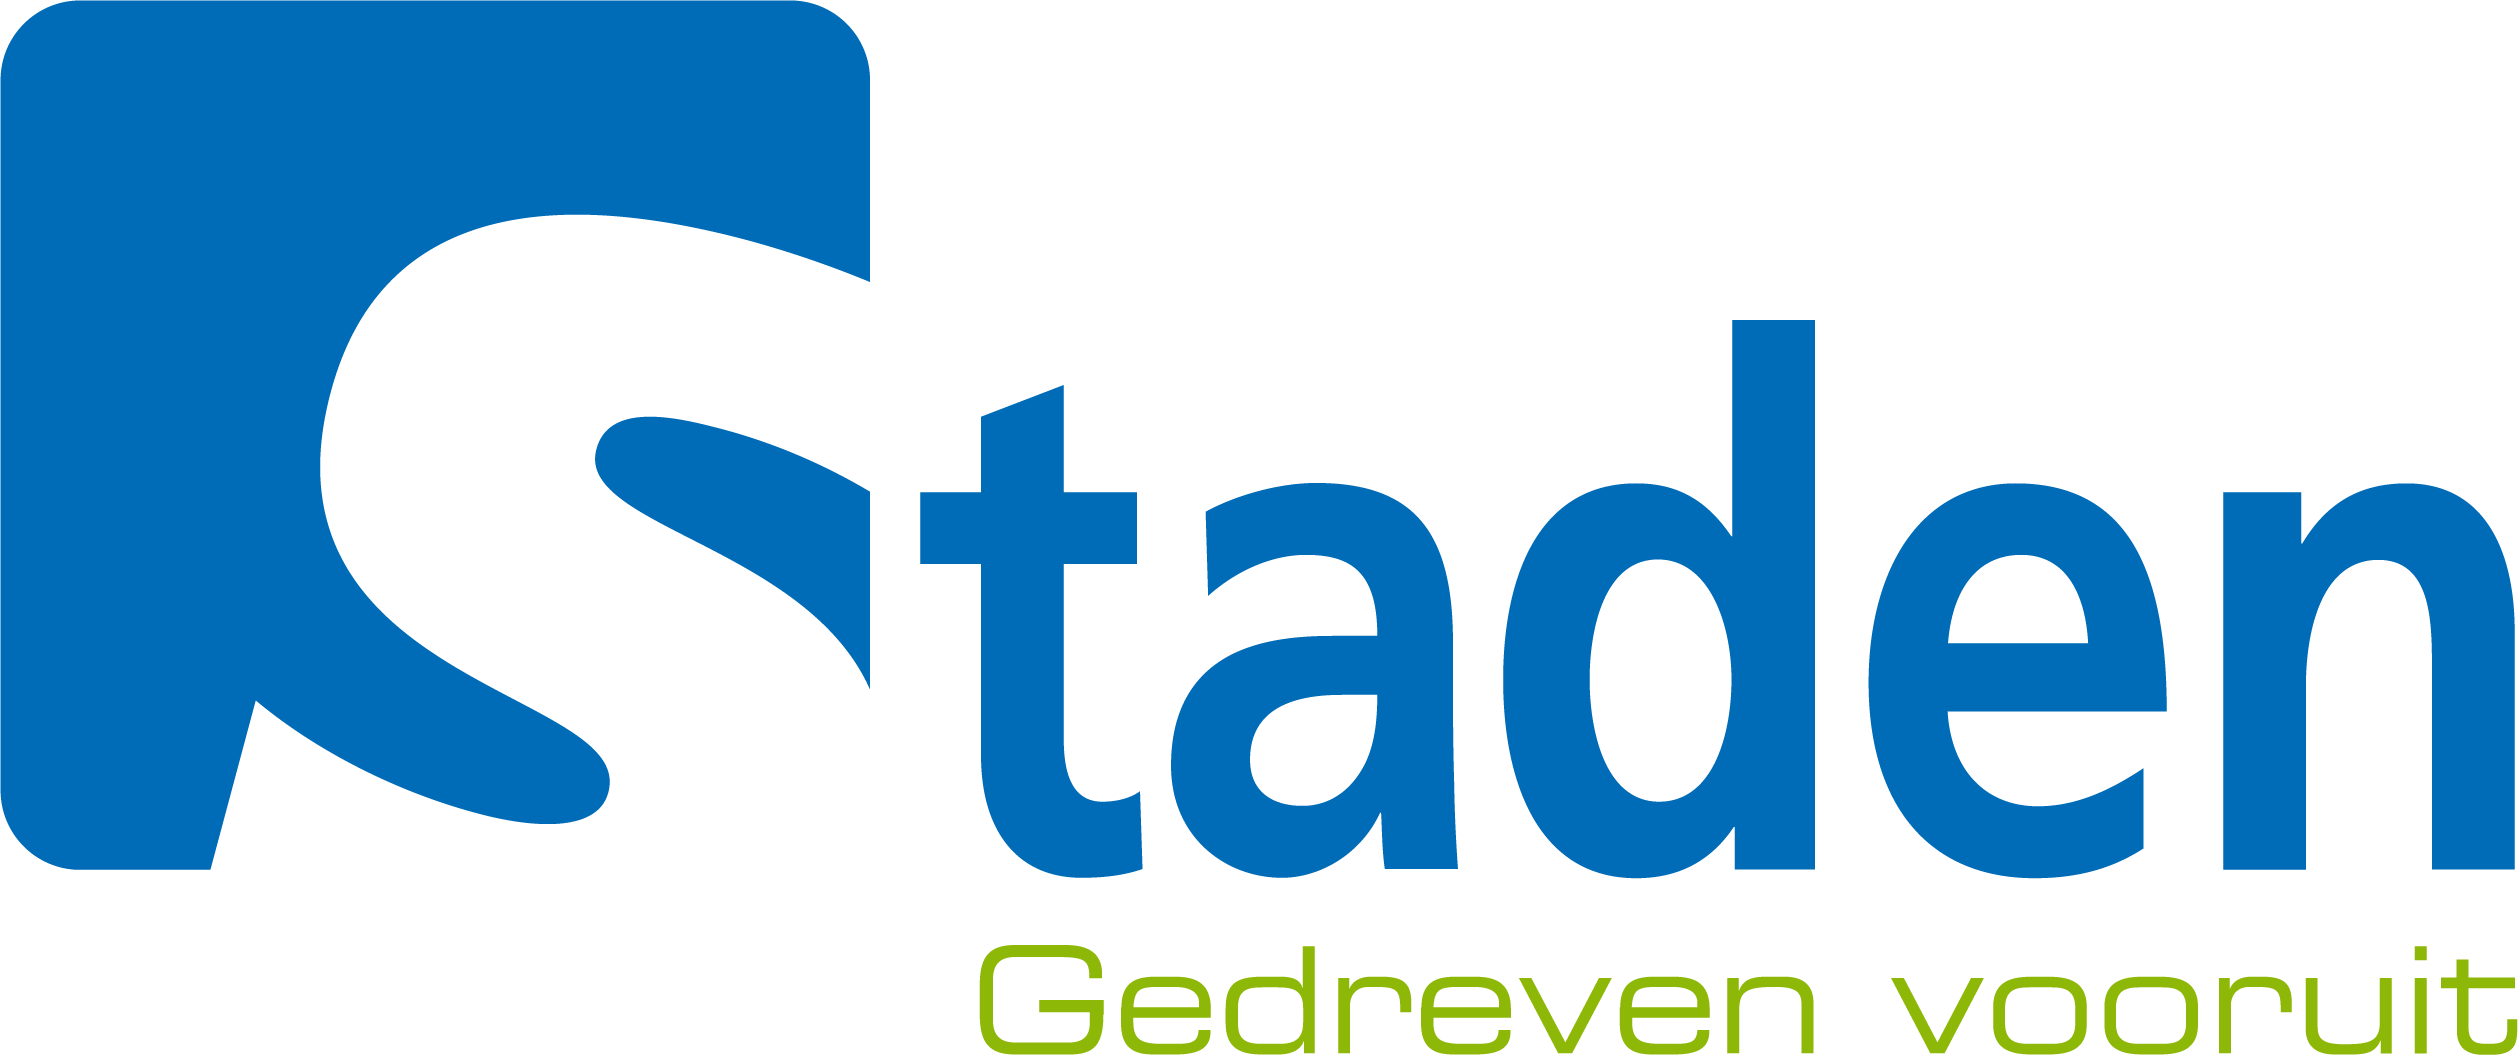 Gemeente logo Staden